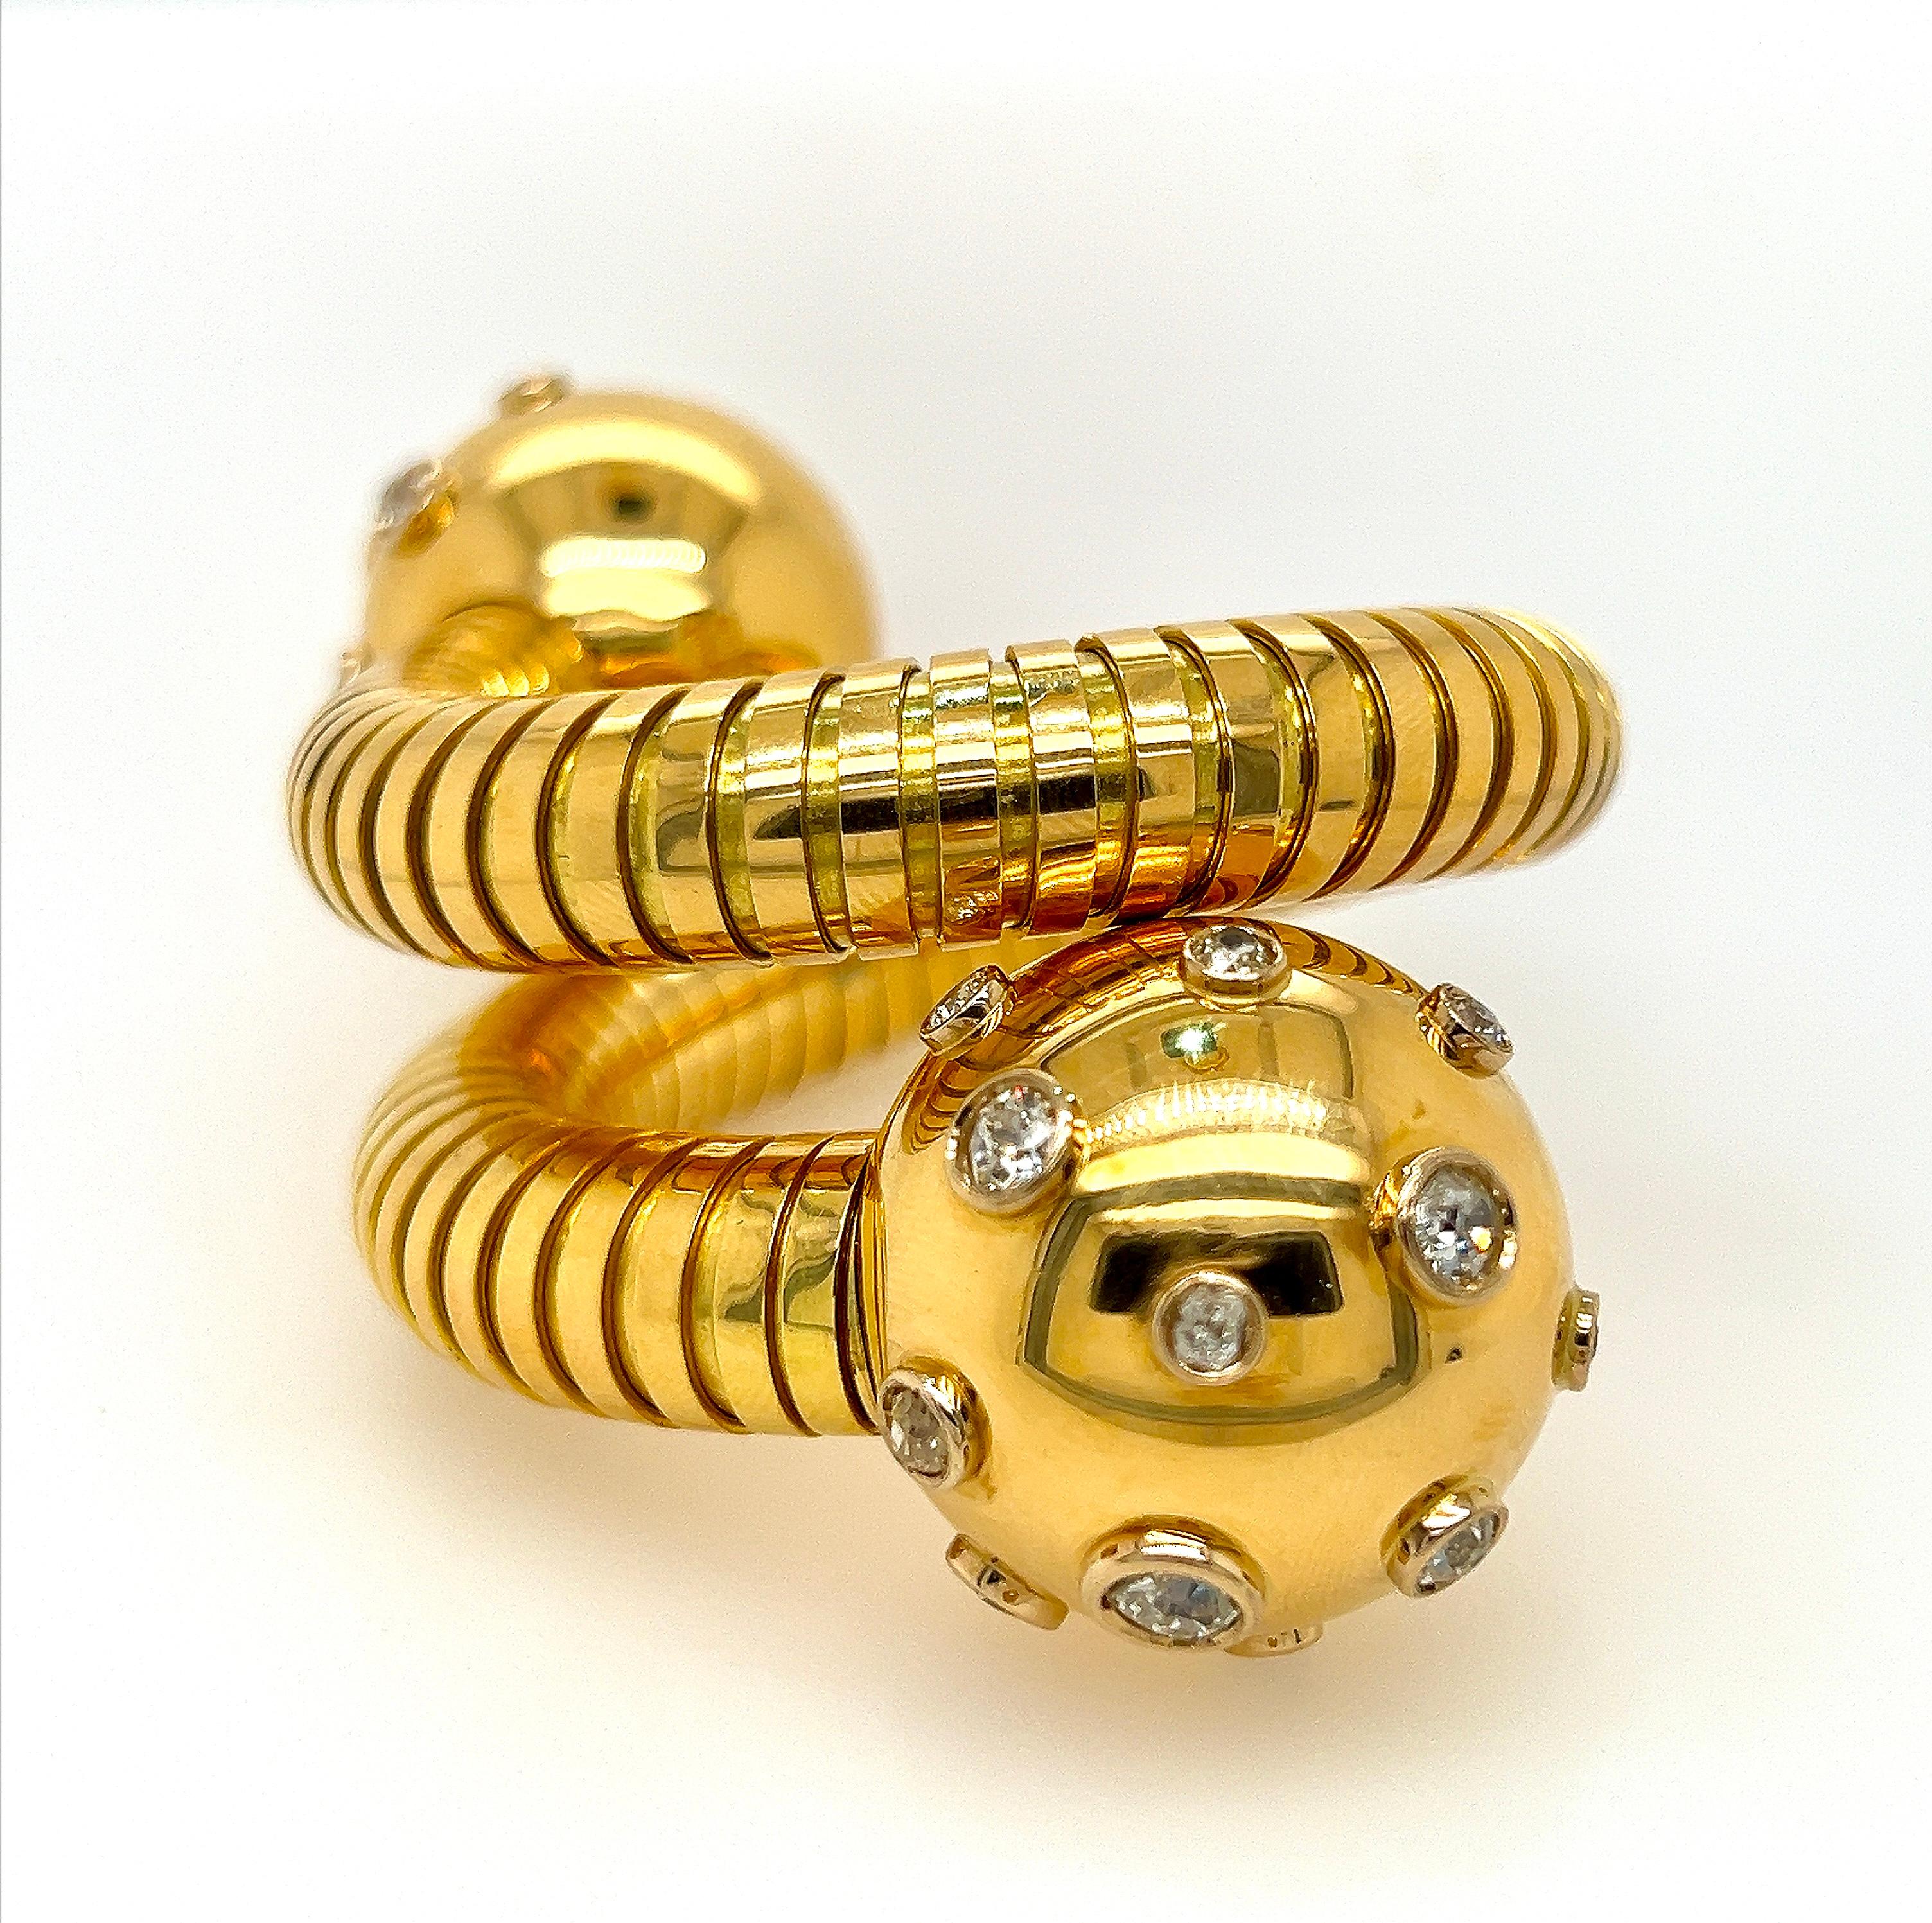 Erhöhen Sie Ihren Stil mit diesem exquisiten Bvlgari-Armband aus Gold und Diamanten der 1930er Jahre. Dieses flexible Armband aus 18-karätigem Gold ist mit 24 europäischen Diamanten und Diamanten im Altminenschliff mit einem Gesamtgewicht von ca.